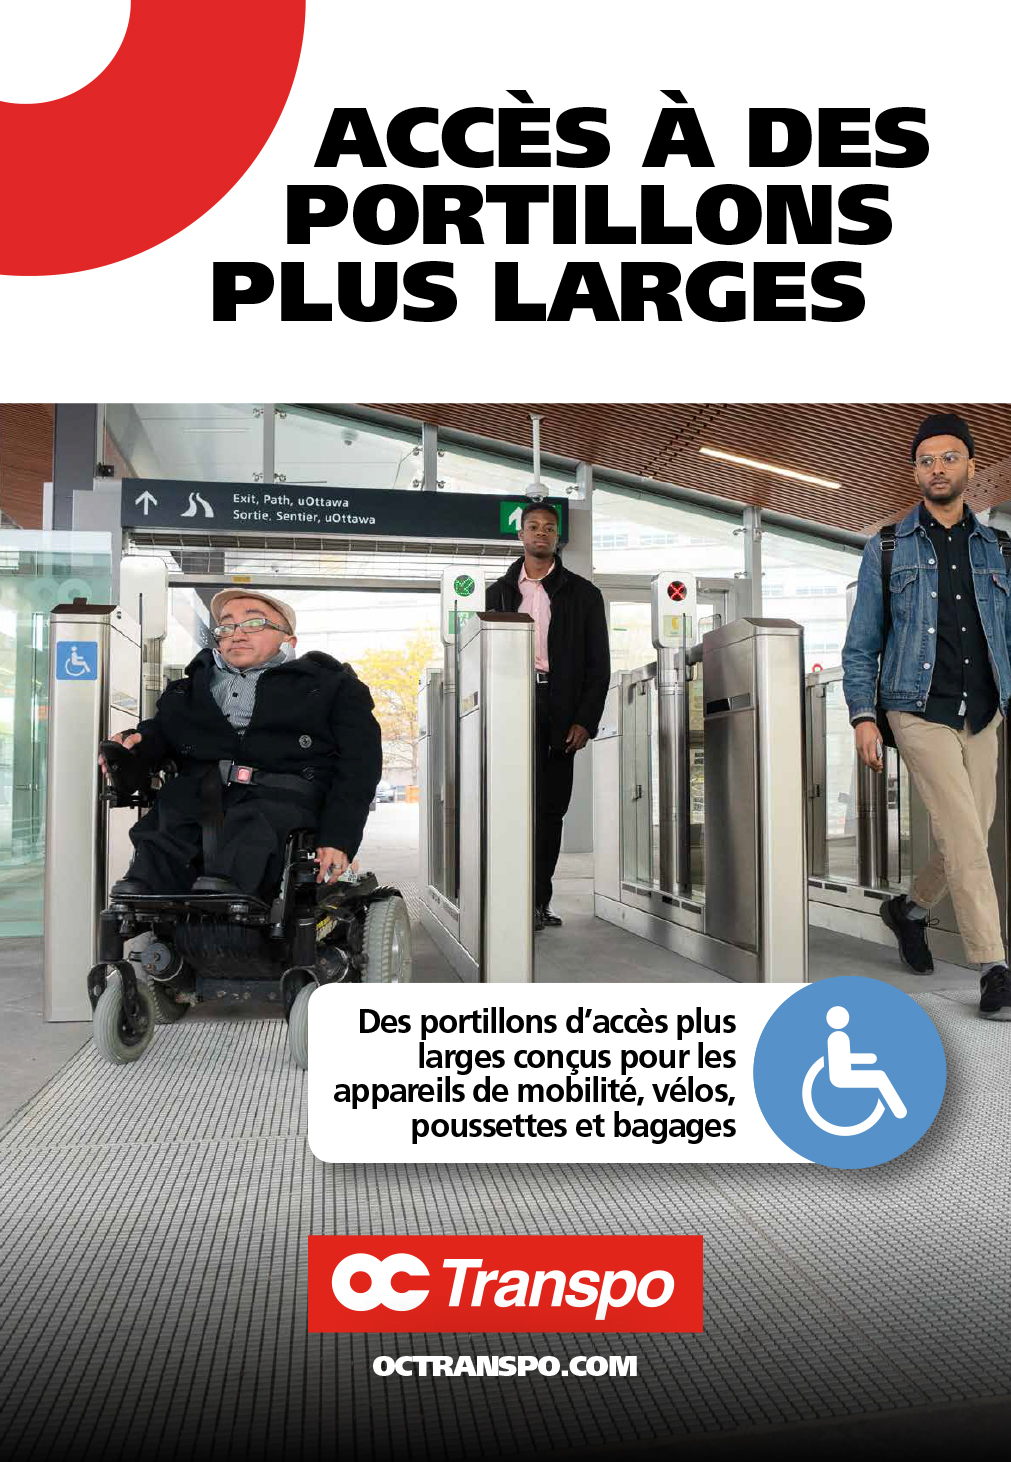 Un homme en fauteuil roulant électrique franchit un portillon d'accès plus large et accessible. Texte sur l'image : Des portillons d'accès plus larges conçus pour les appareils de mobilité, vélos, poussettes et bagages